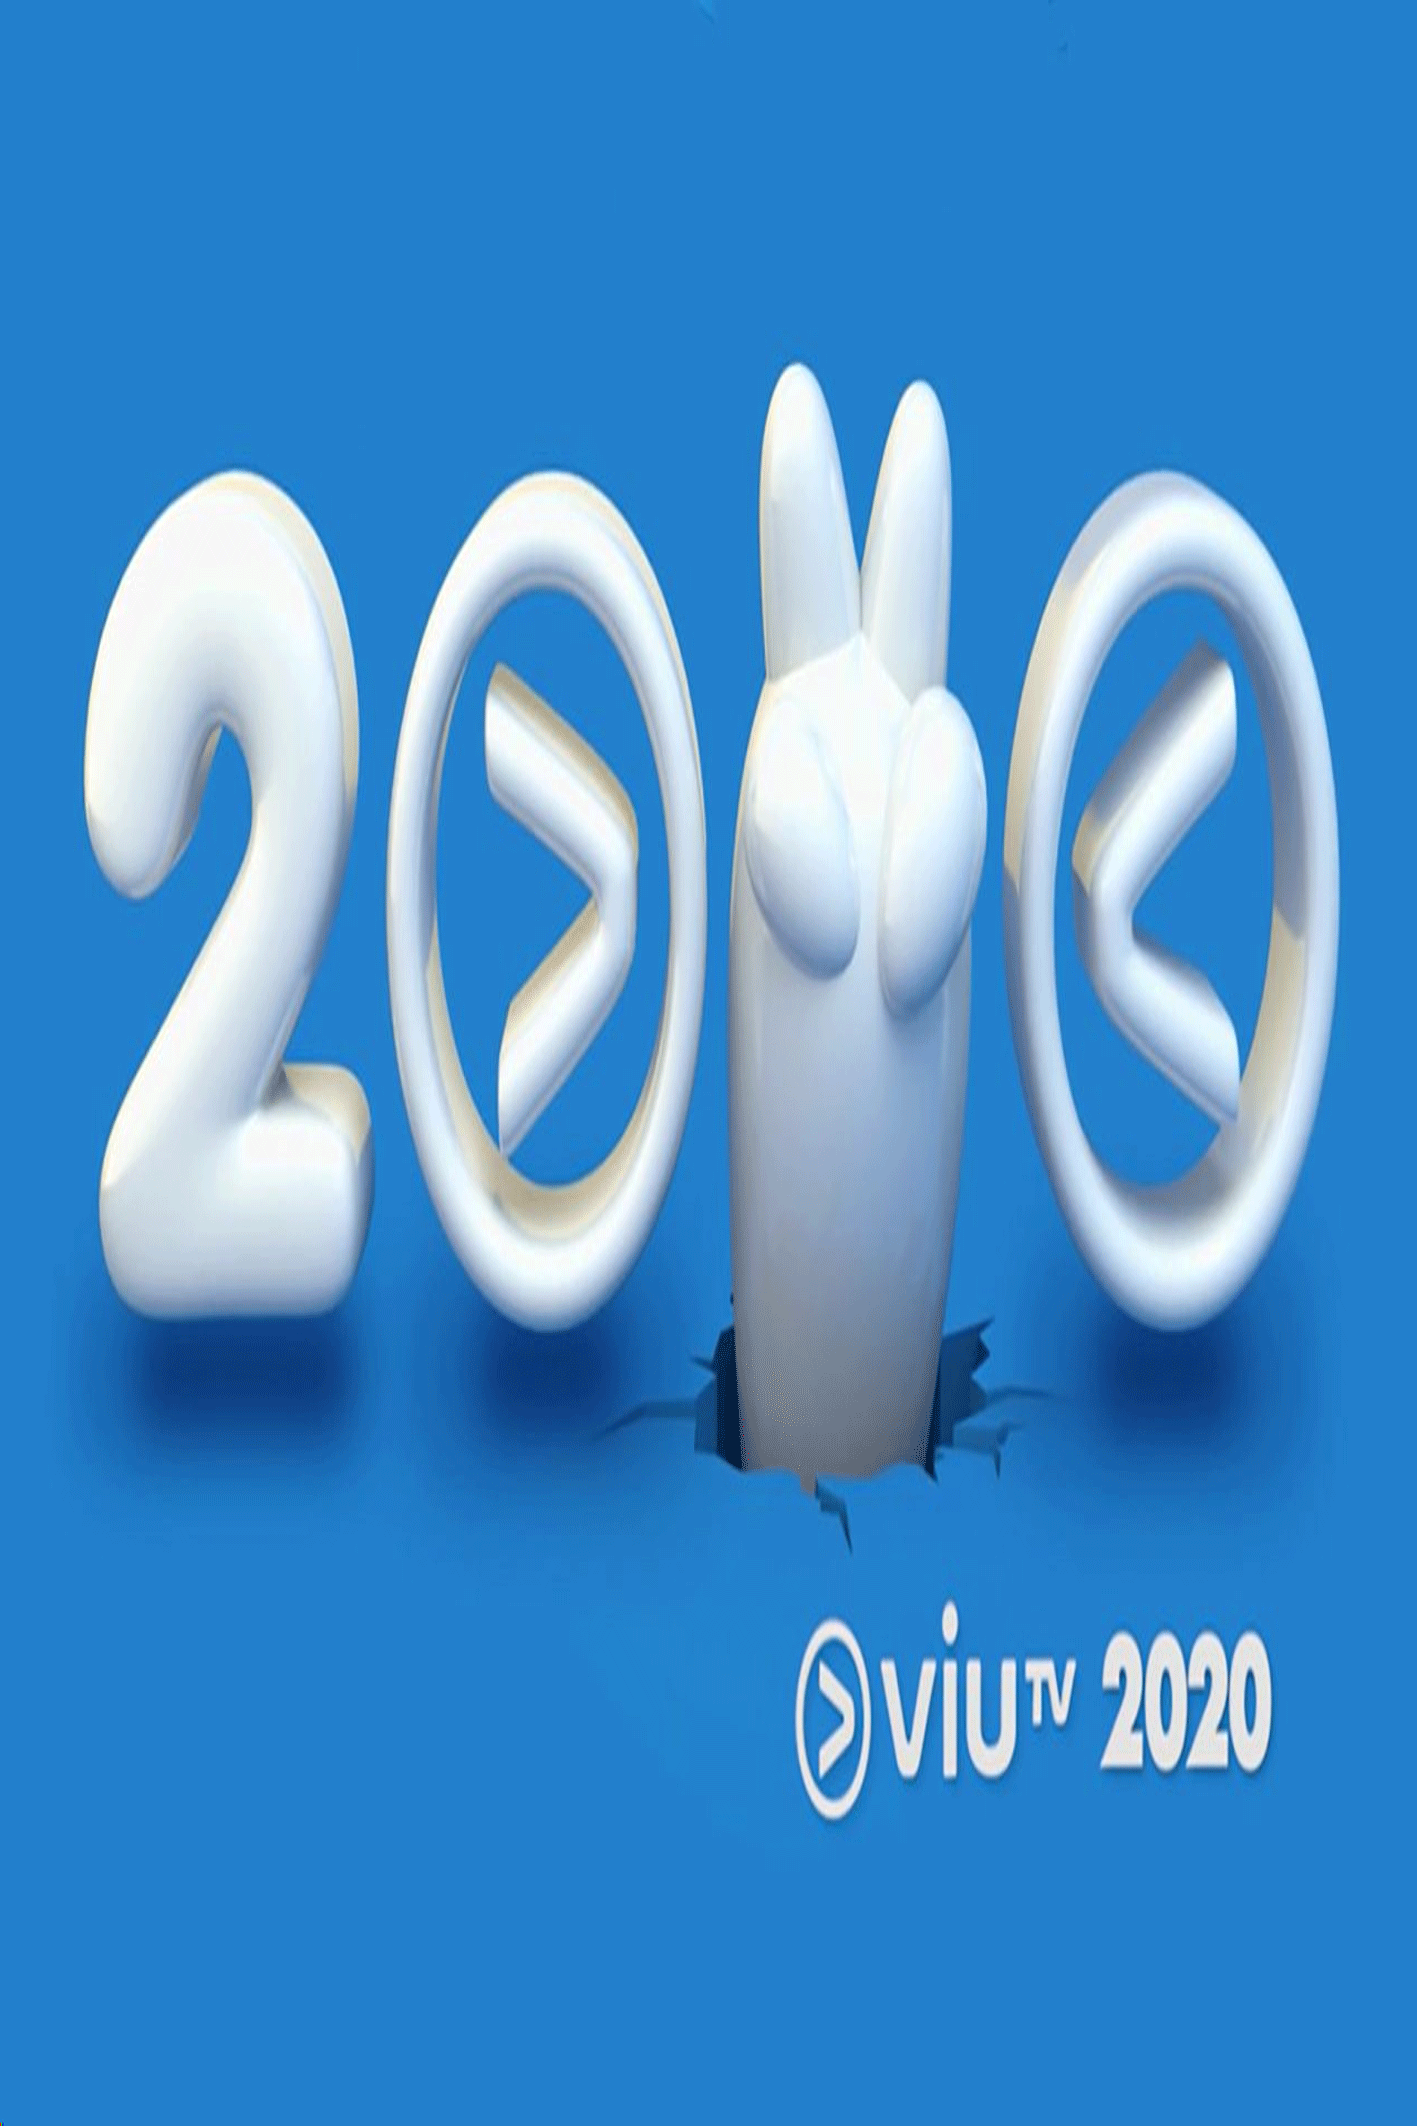 ViuTV 2020